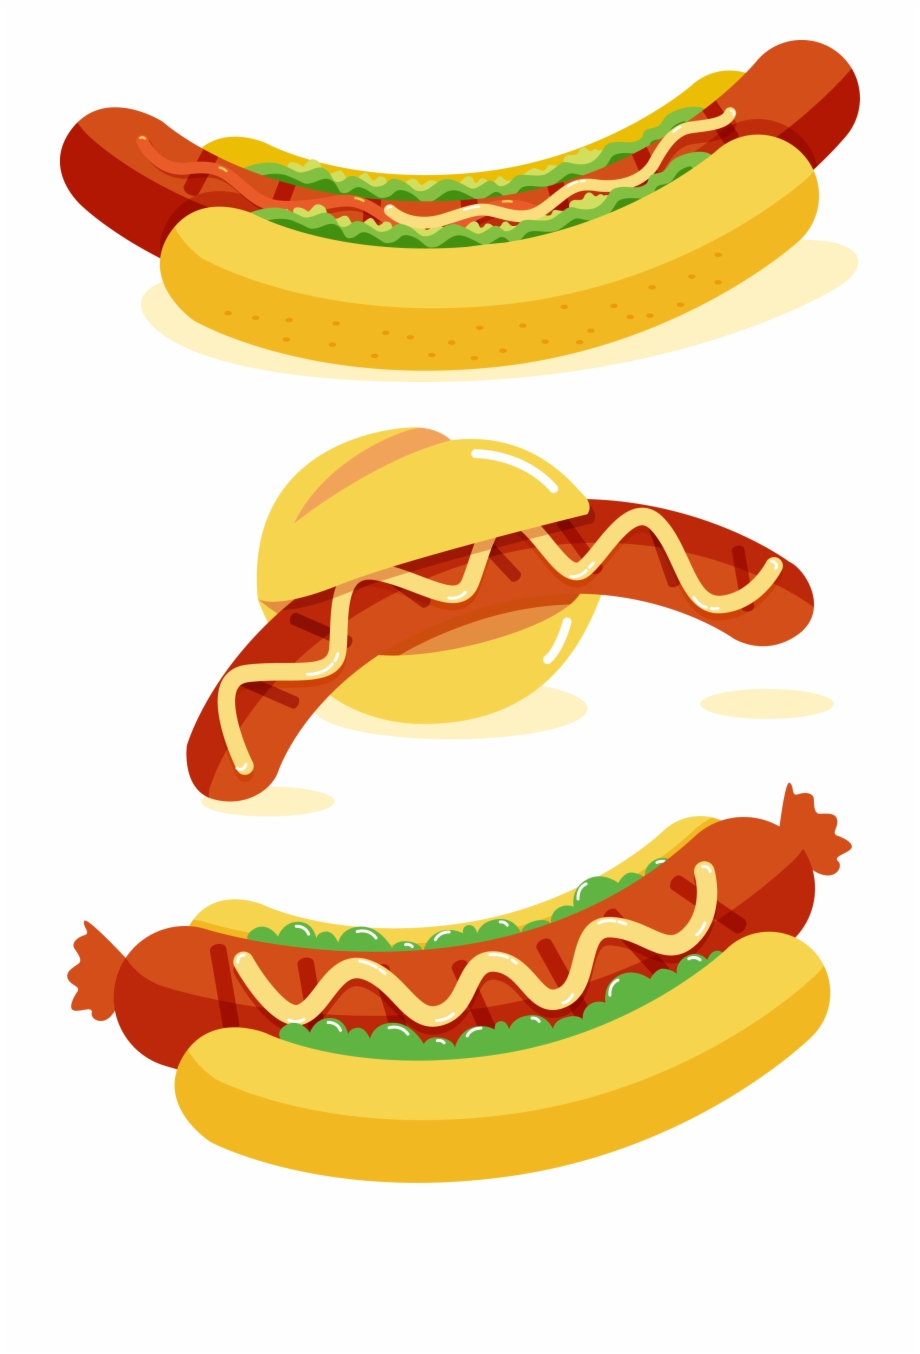 Hot dog
